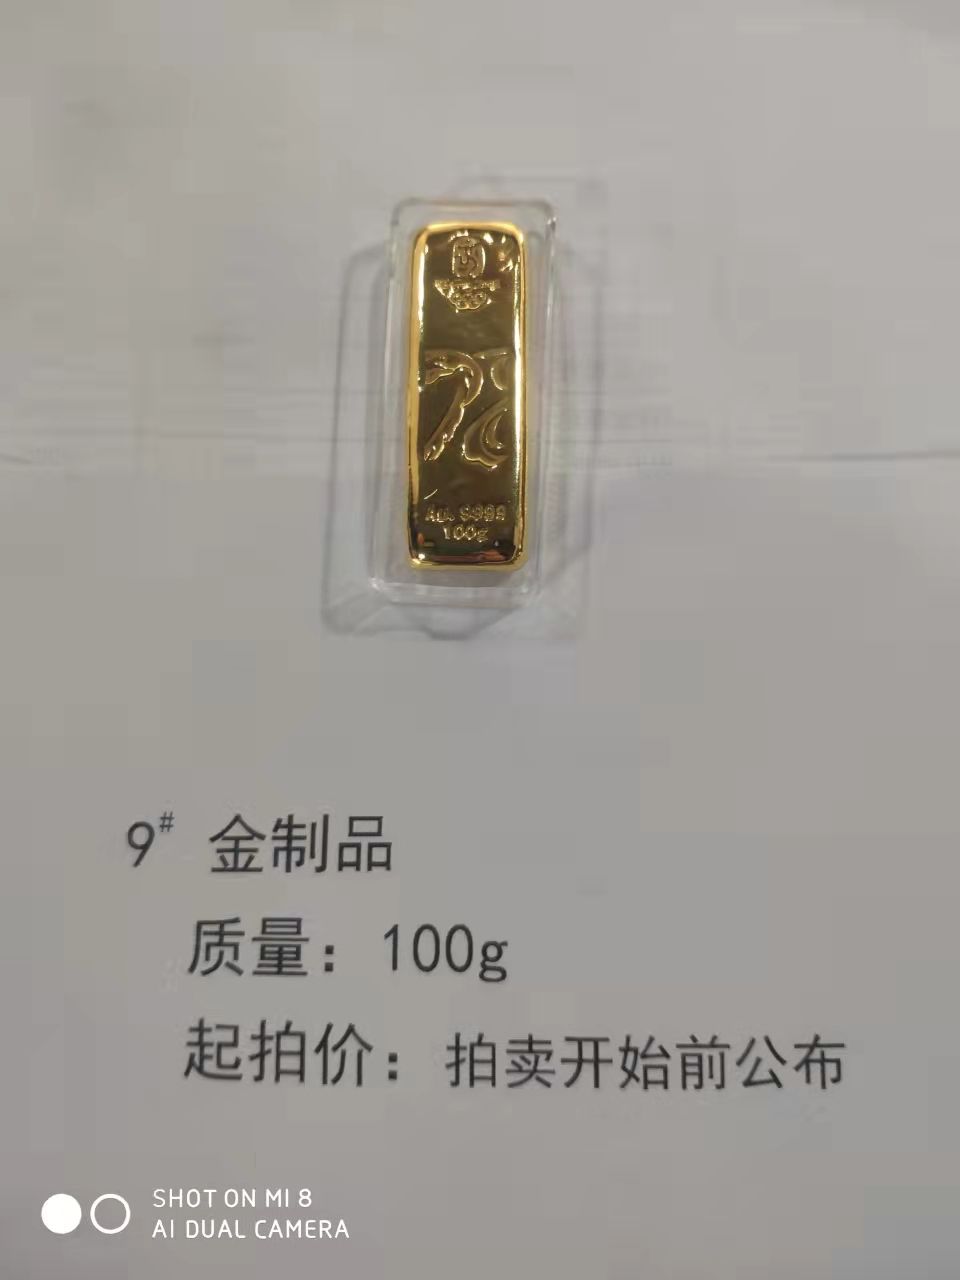 9金制品100g-辽宁省拍卖行